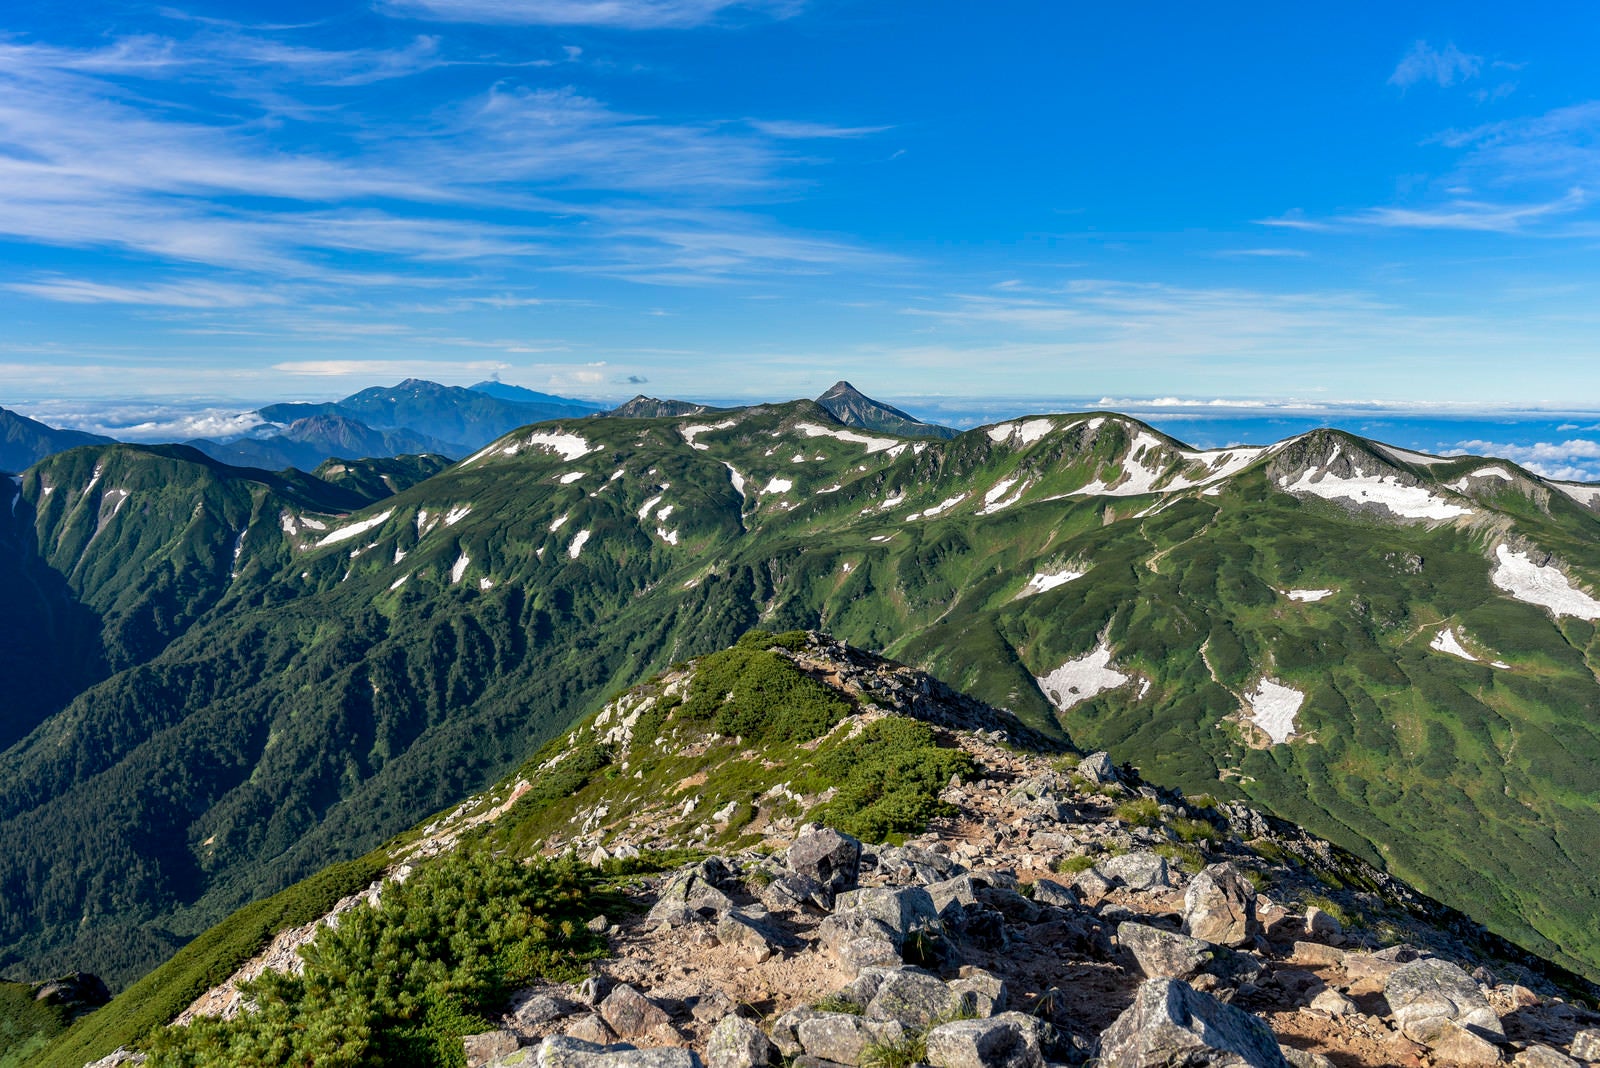 「鷲羽岳山頂から三俣蓮華、双六、笠ヶ岳方面を見る」の写真